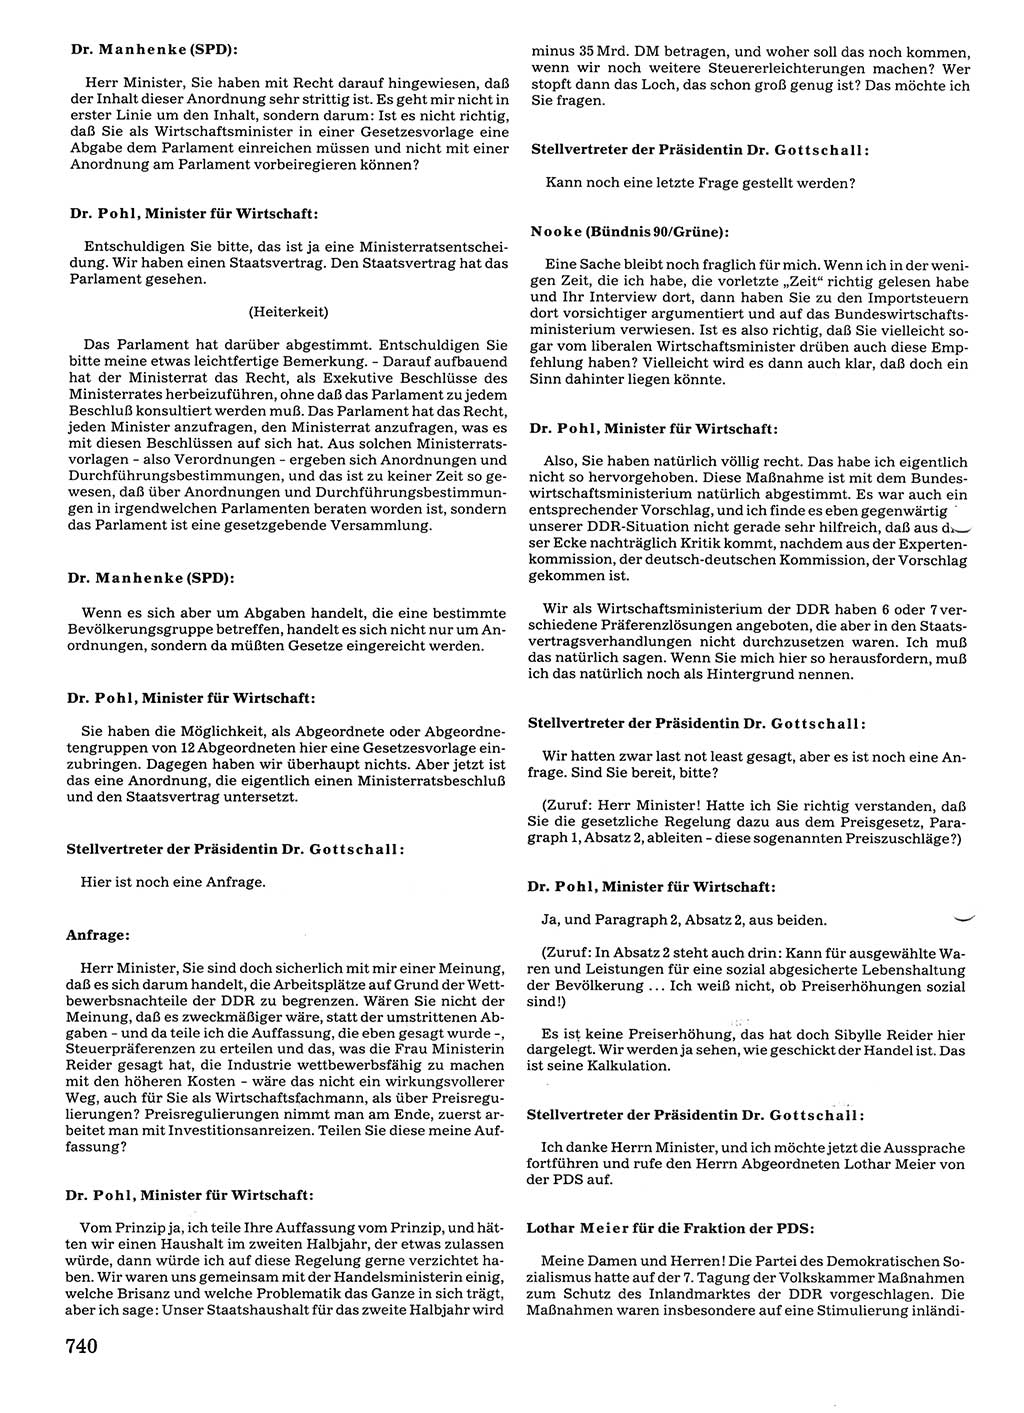 Tagungen der Volkskammer (VK) der Deutschen Demokratischen Republik (DDR), 10. Wahlperiode 1990, Seite 740 (VK. DDR 10. WP. 1990, Prot. Tg. 1-38, 5.4.-2.10.1990, S. 740)